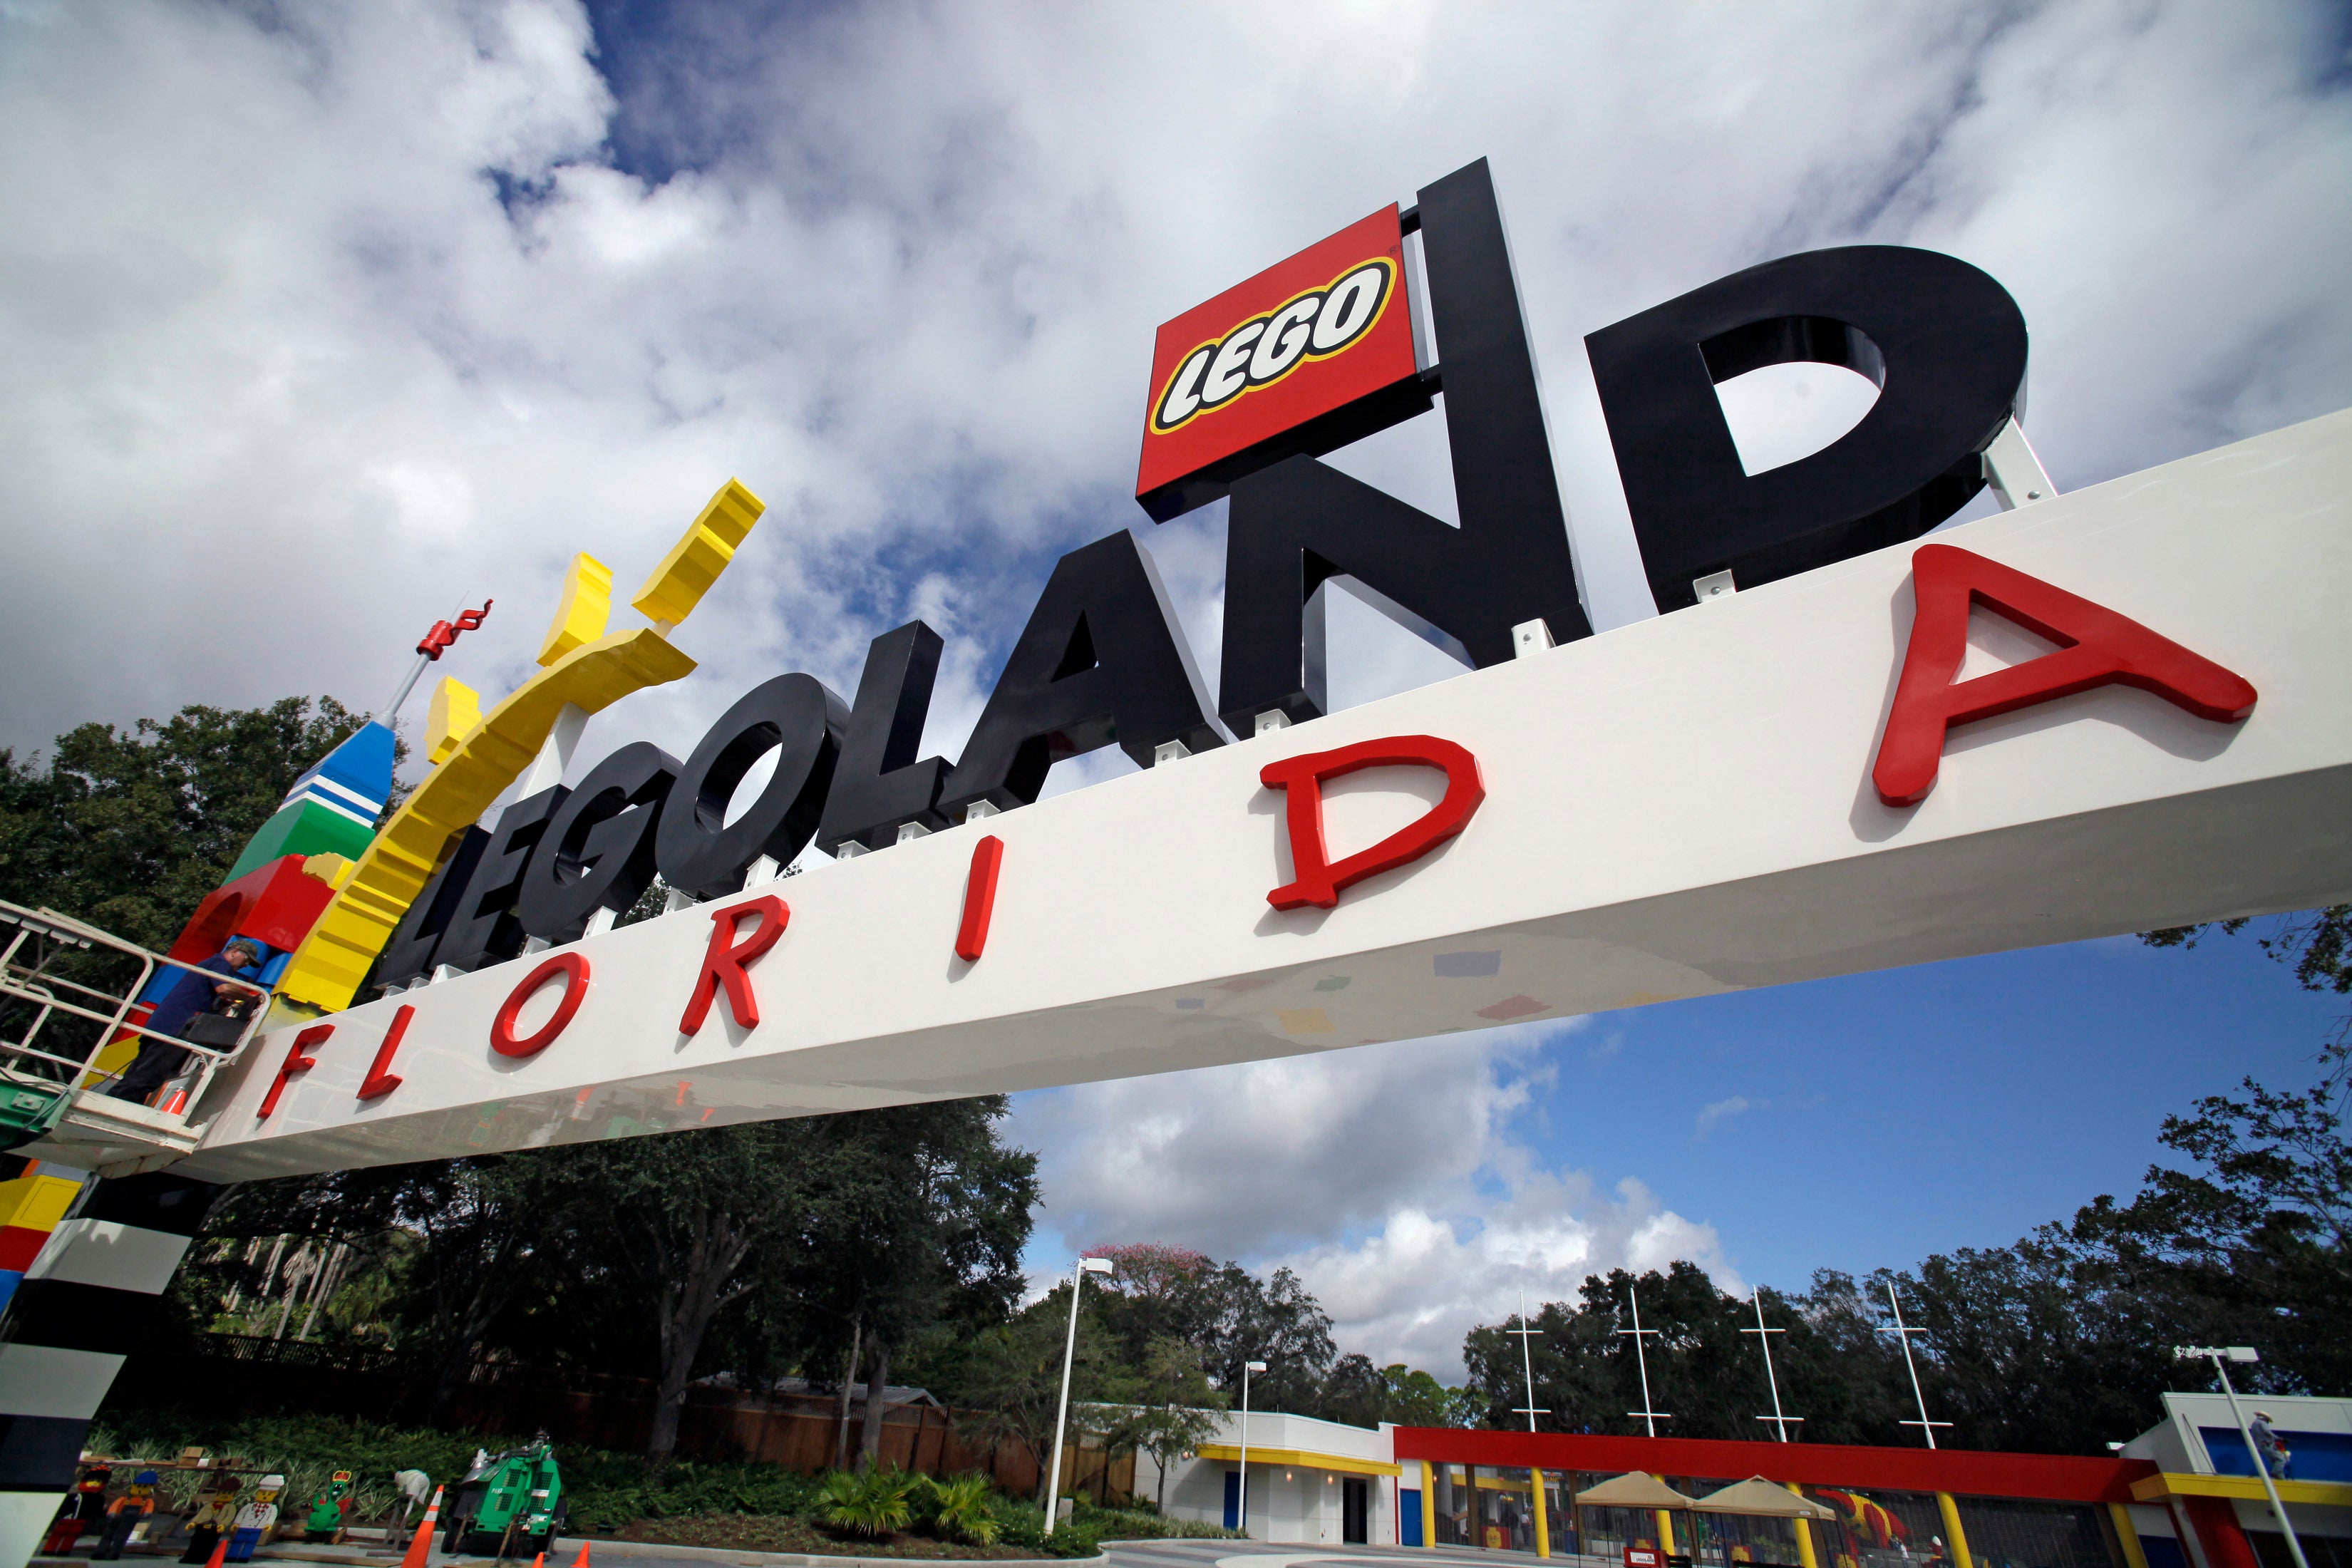 La vocera de Legoland Florida Kelly Hornick dijo al diario The Ledger in Lakeland que habrá un anuncio formal en el 2021, cuando se cumpla el décimo aniversario de la inauguración del parque.